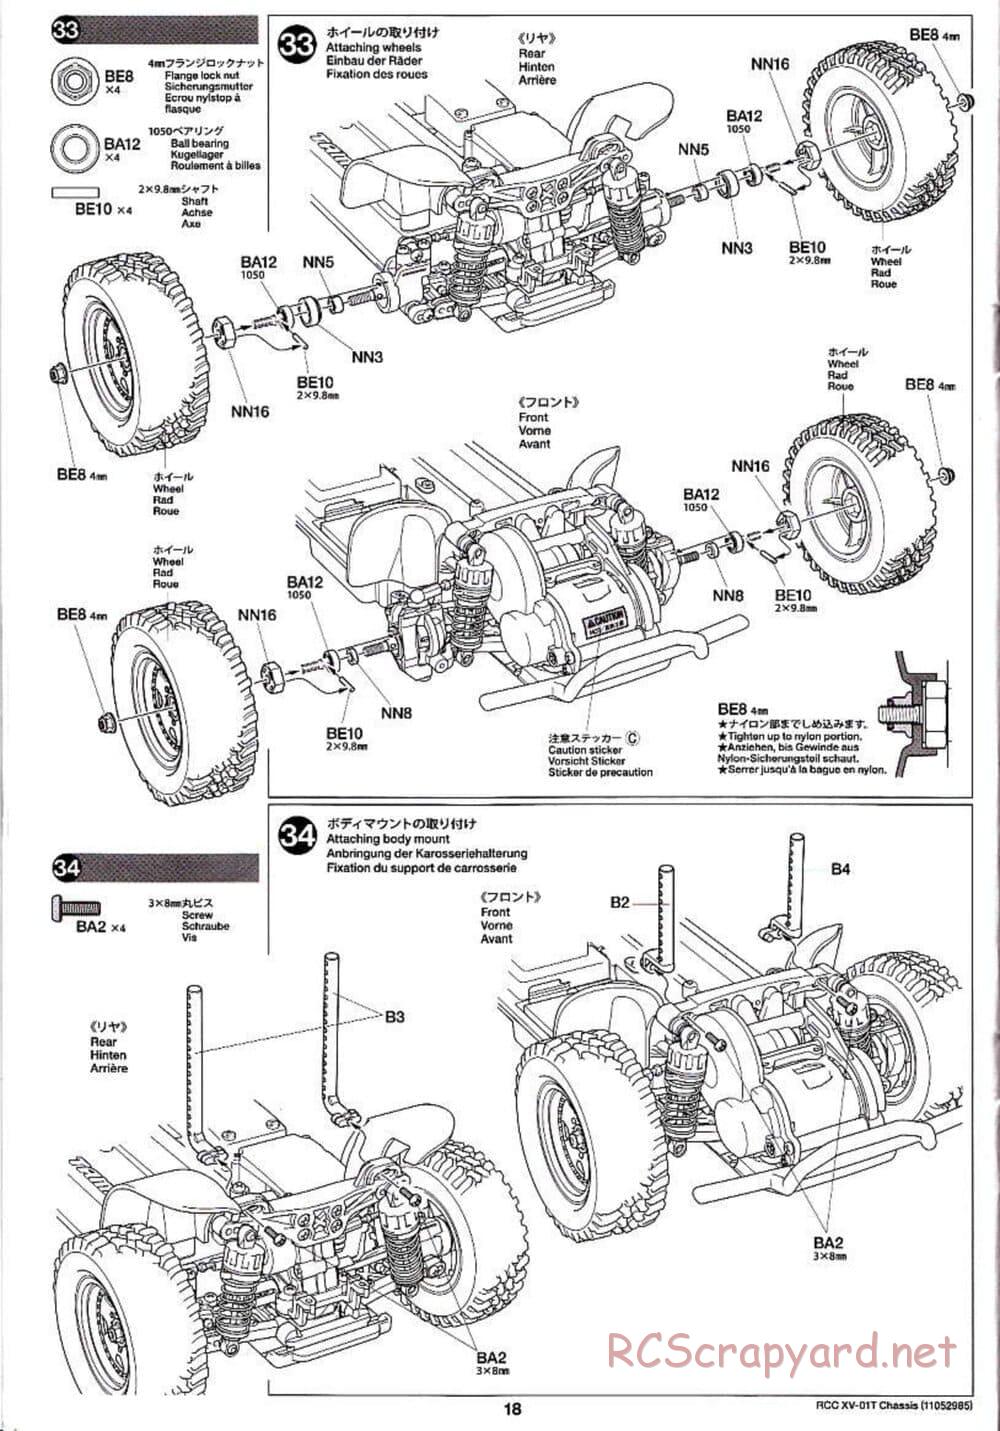 Tamiya - XV-01T Chassis - Manual - Page 18